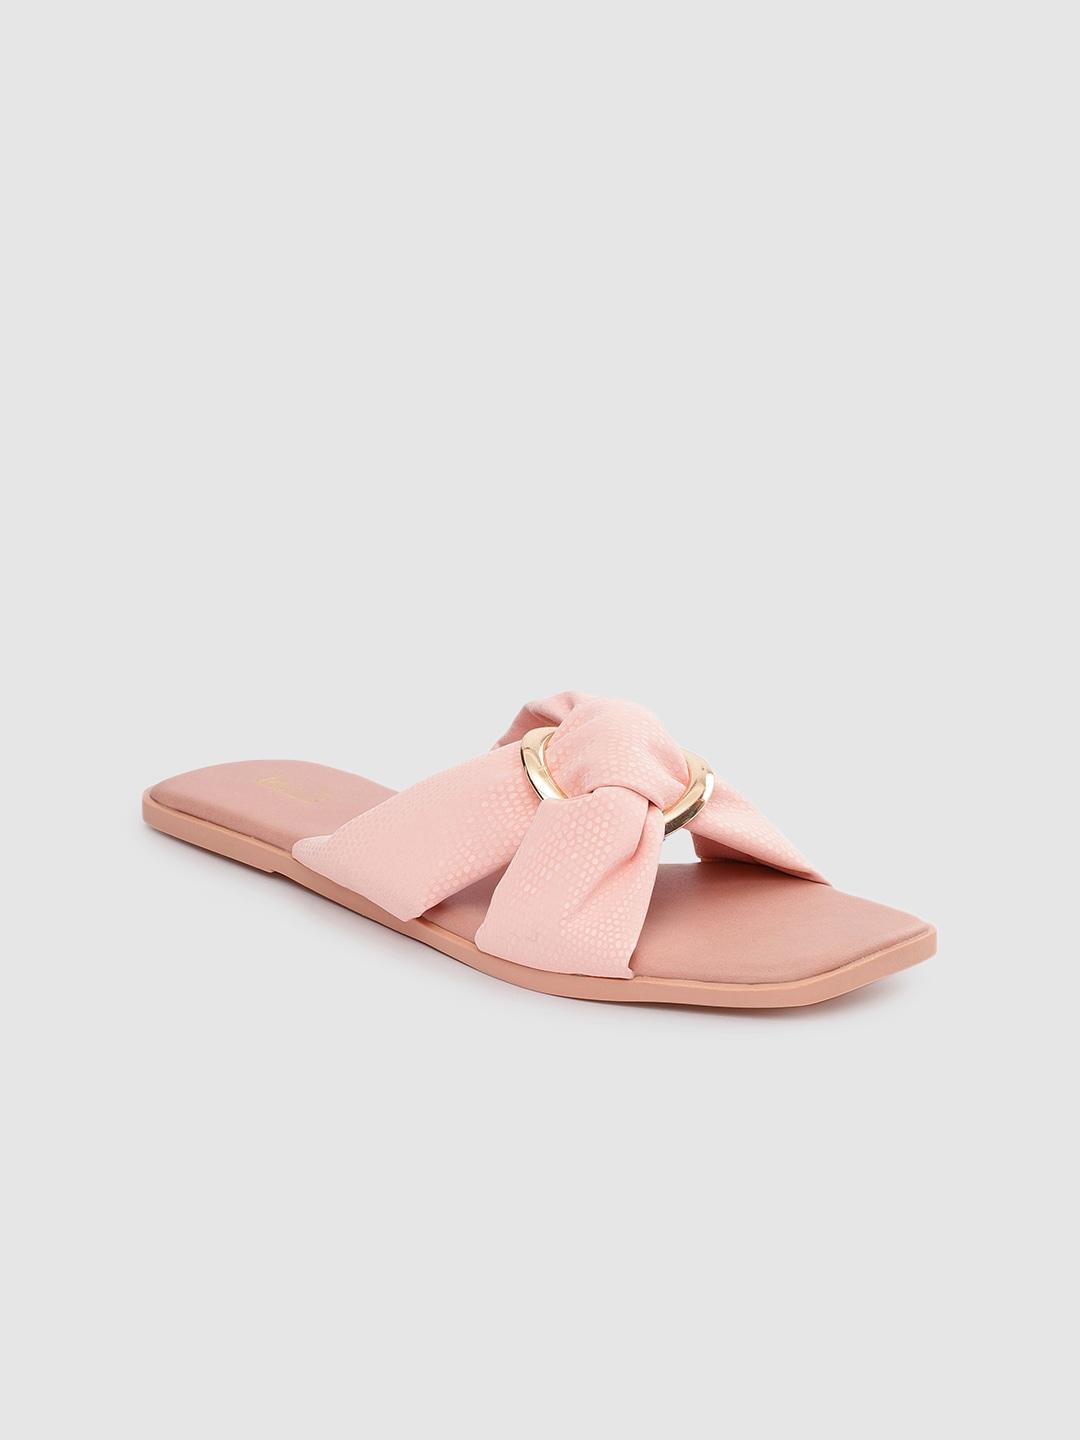 Inc 5 Women Pink & Pink Comfort Sandals